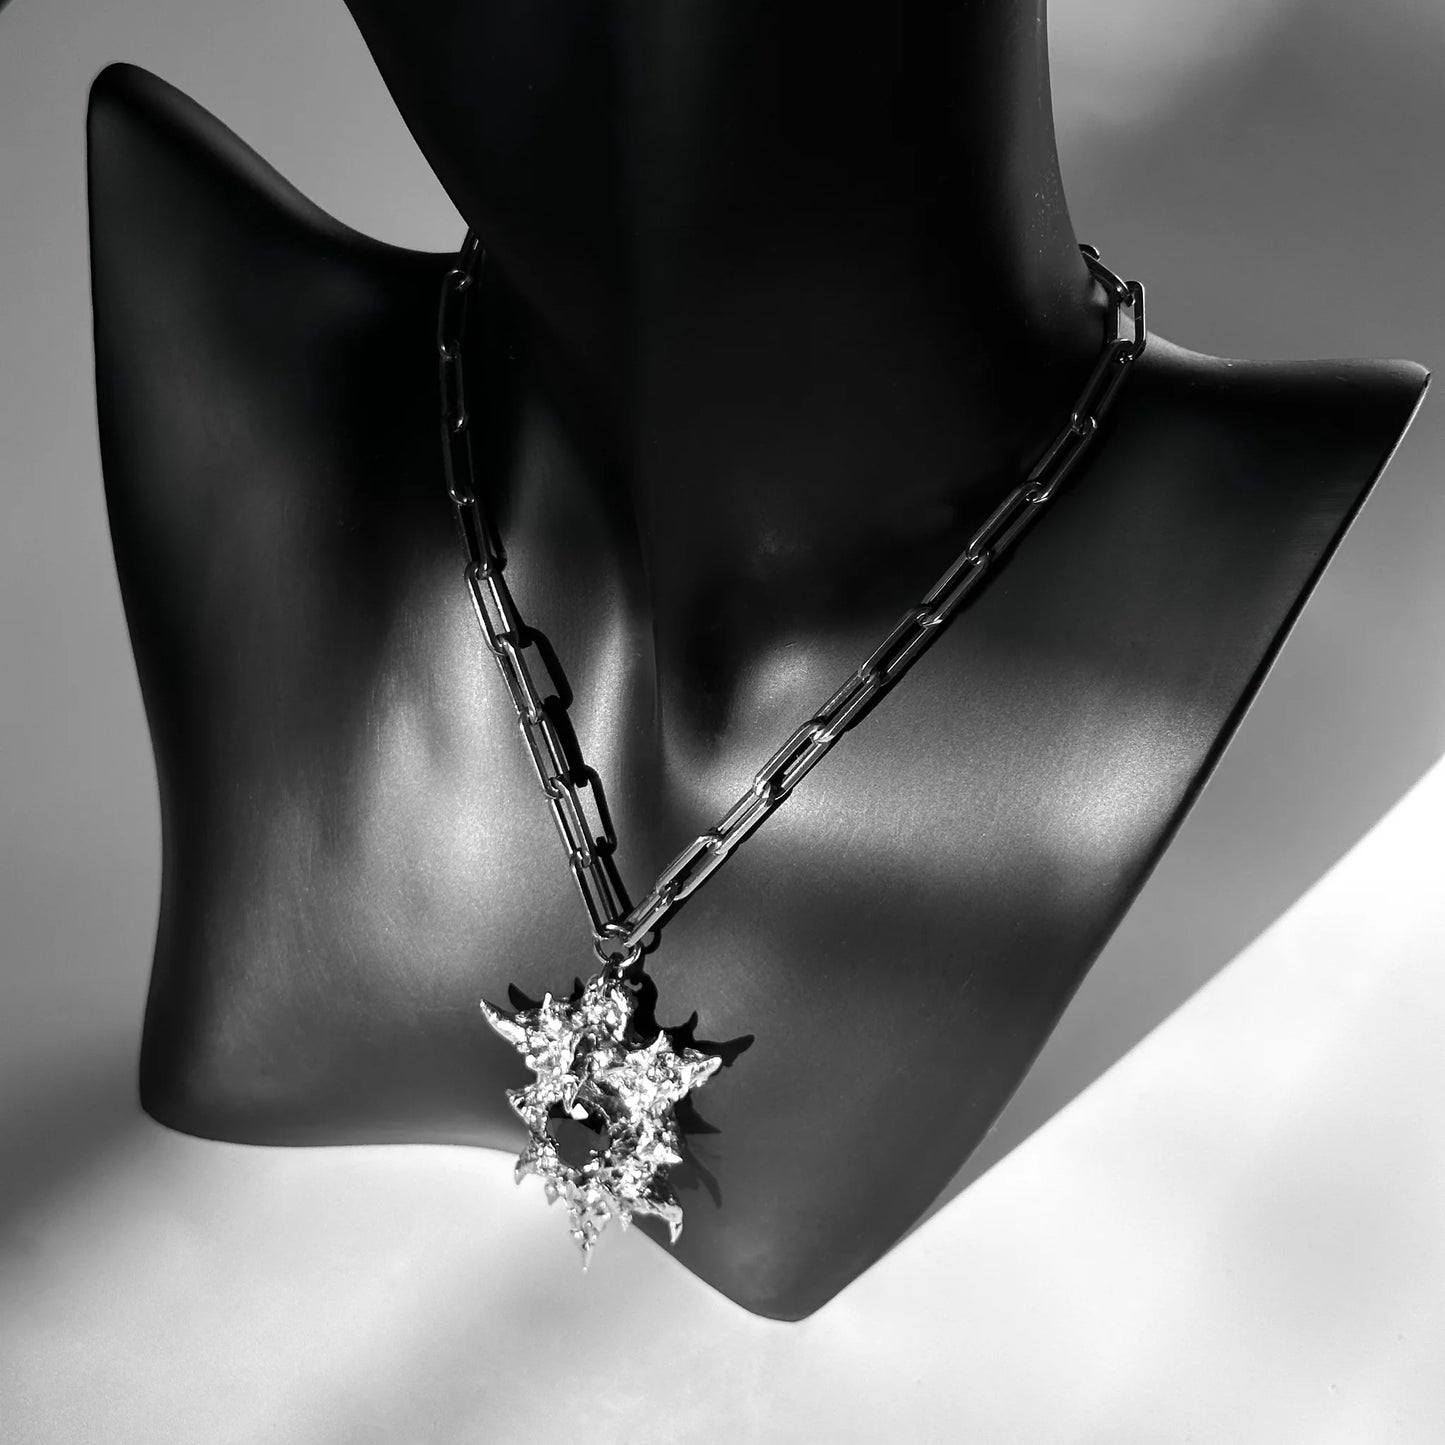 Soldered black gemstone necklace